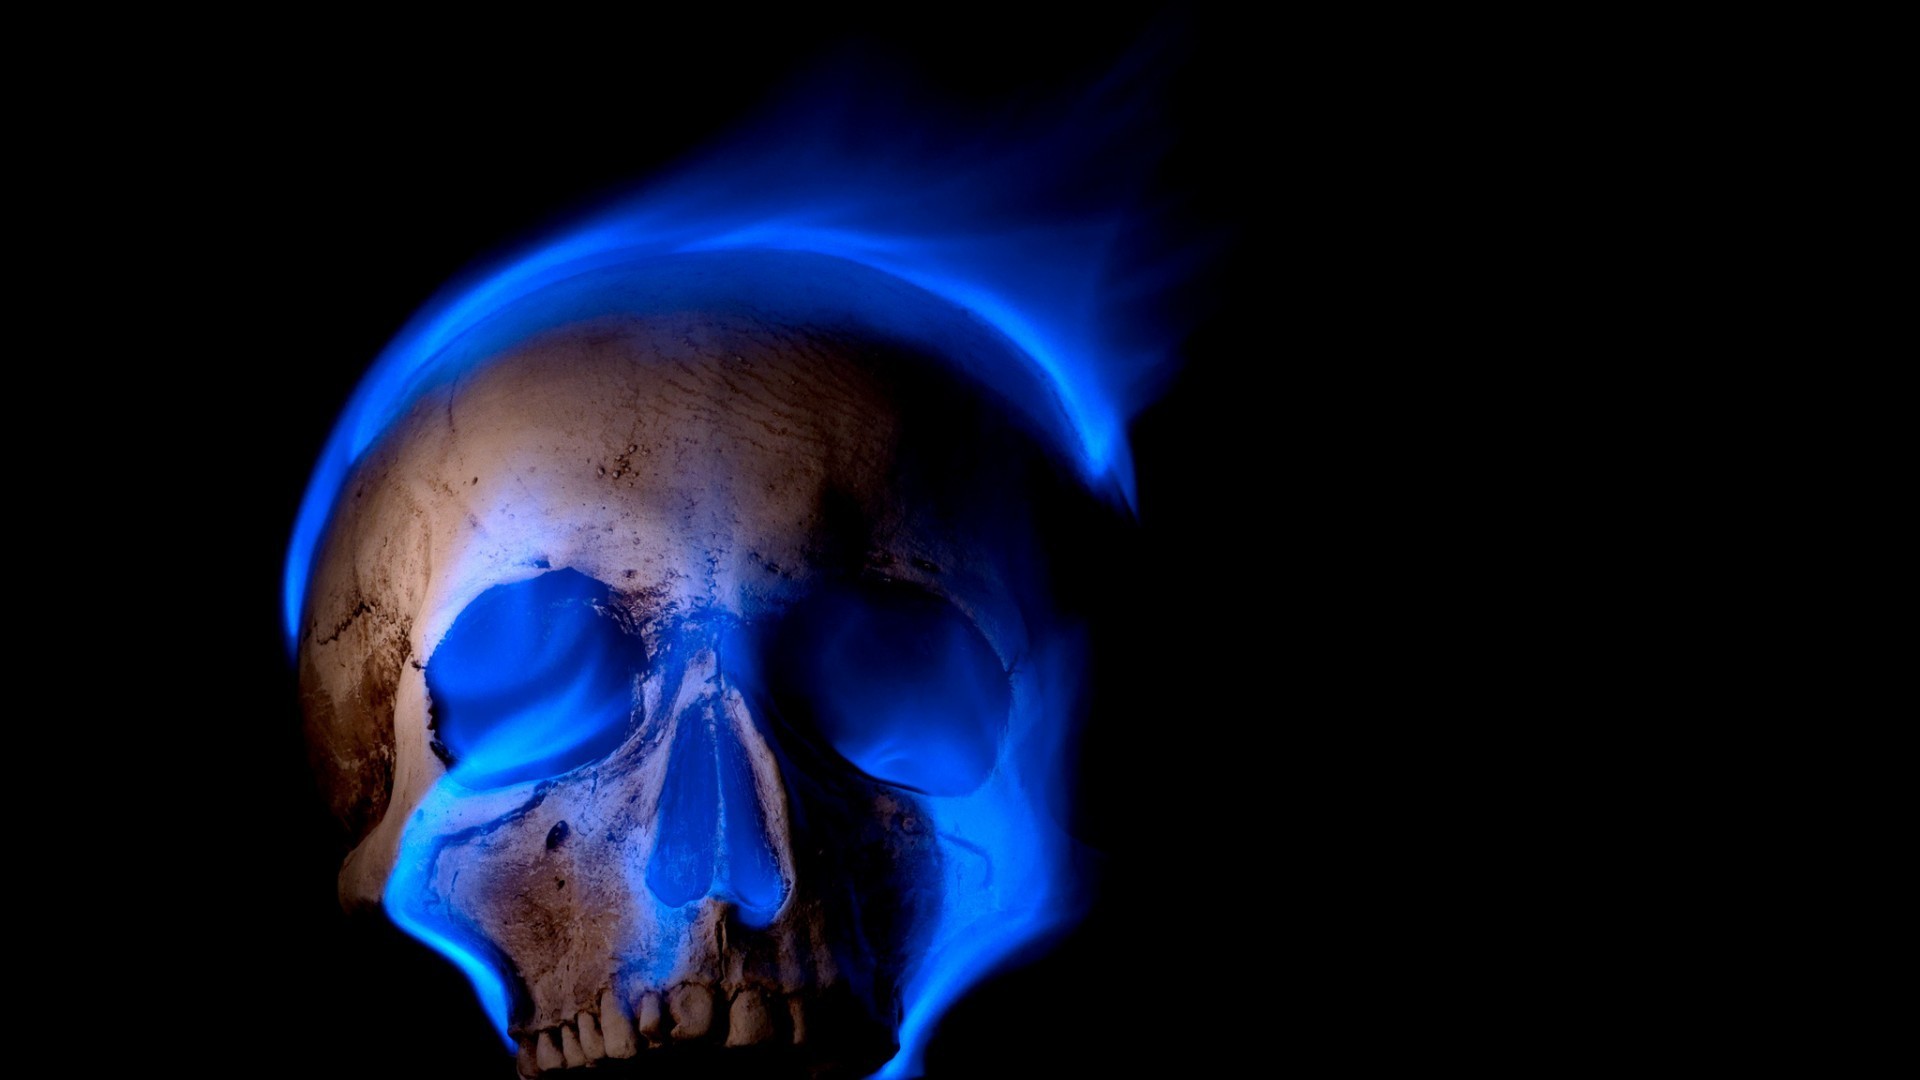 1920x1080 General  digital art skull black background teeth burning blue flames  fire death spooky Gothic